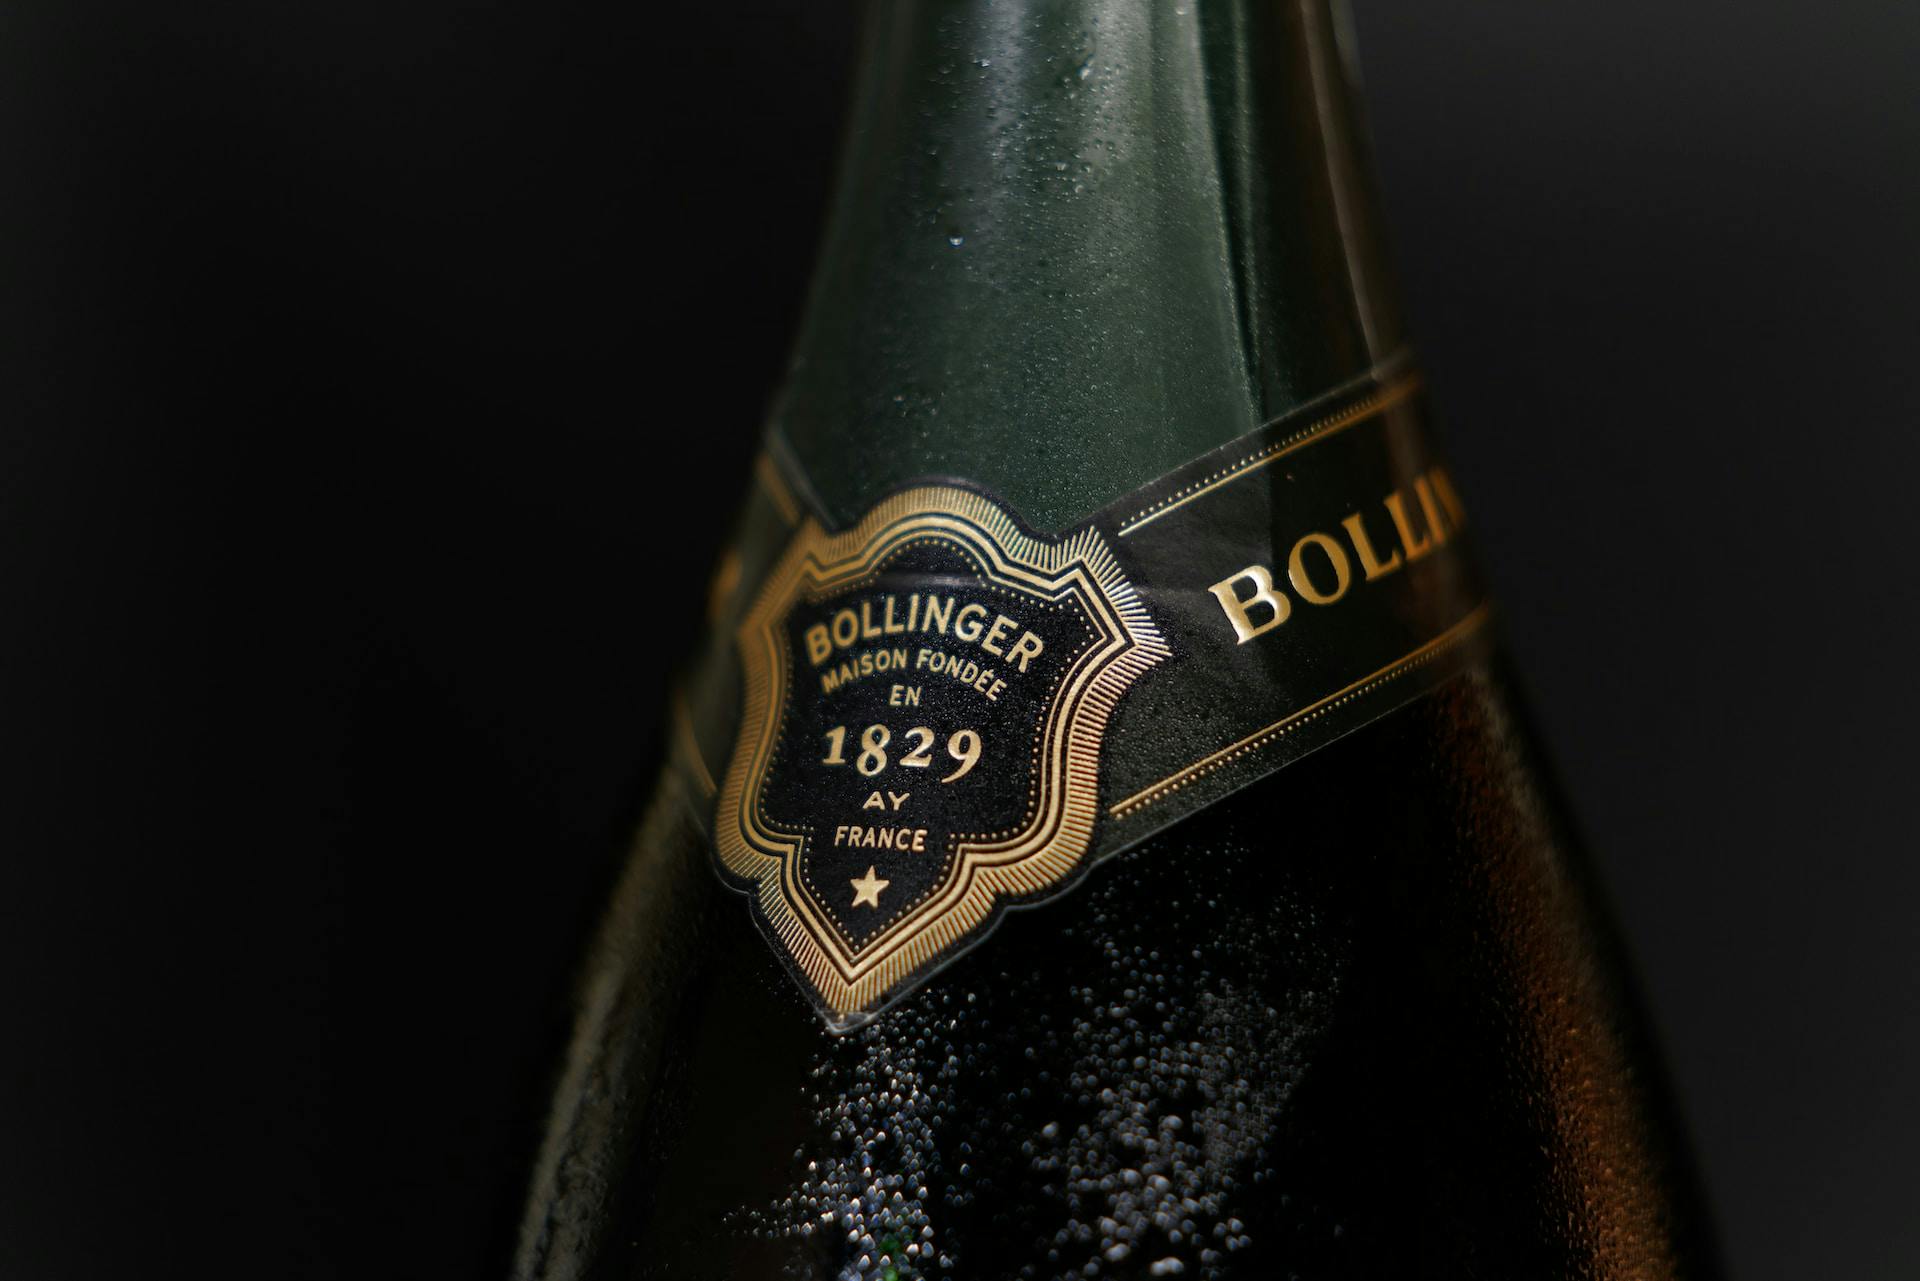 Bollinger Flasche Closeup